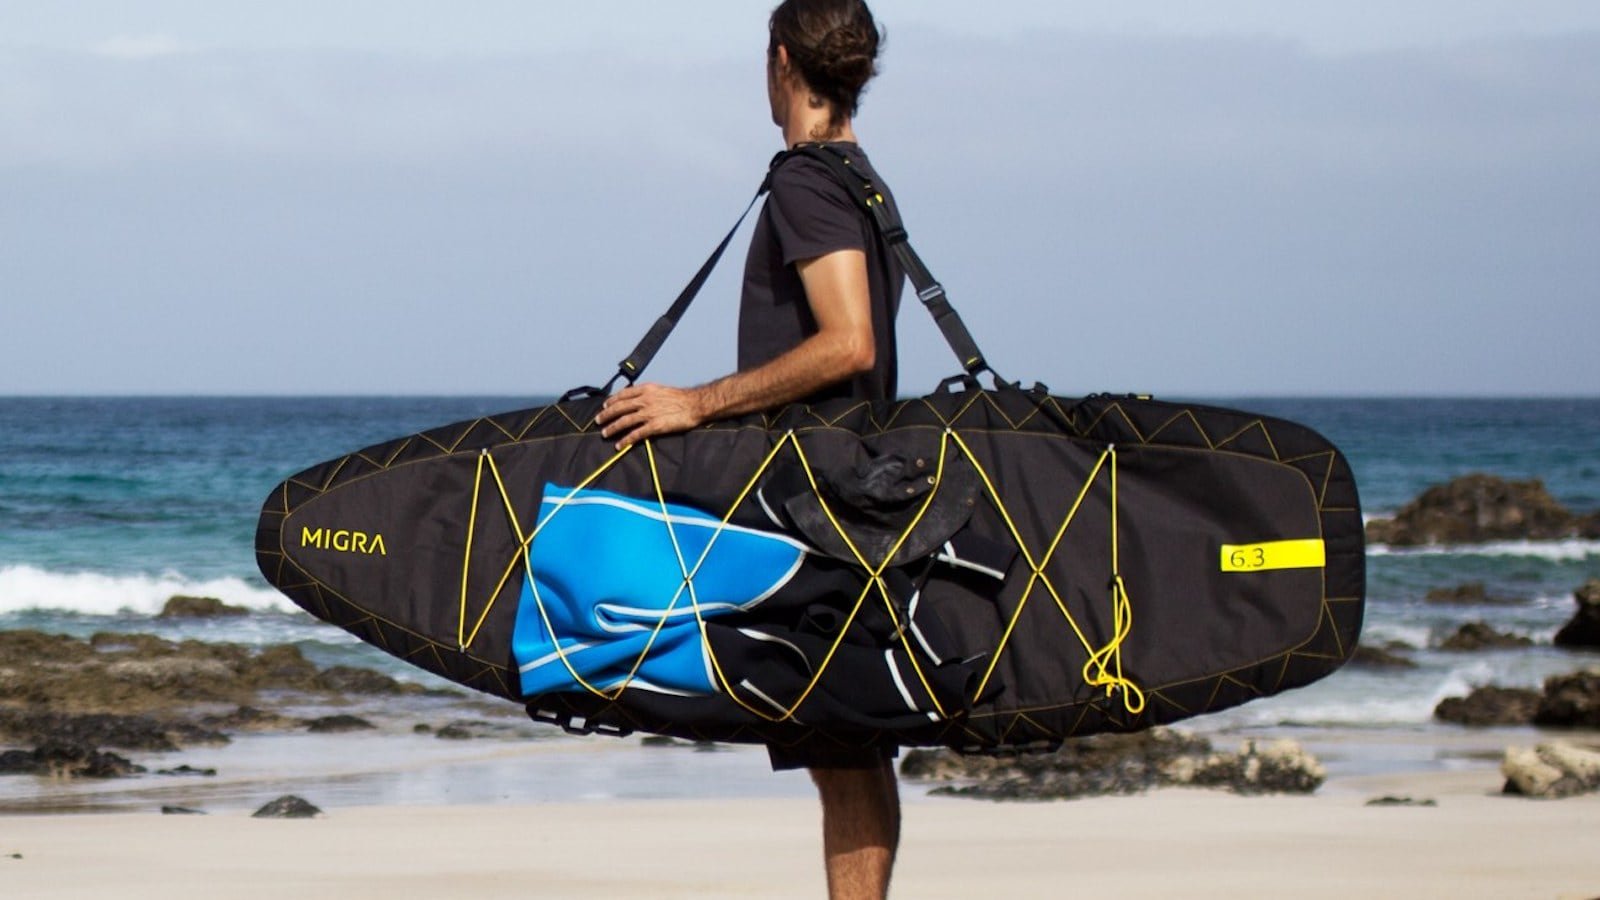 MIGRA functional surfboard bag is great for adventurers